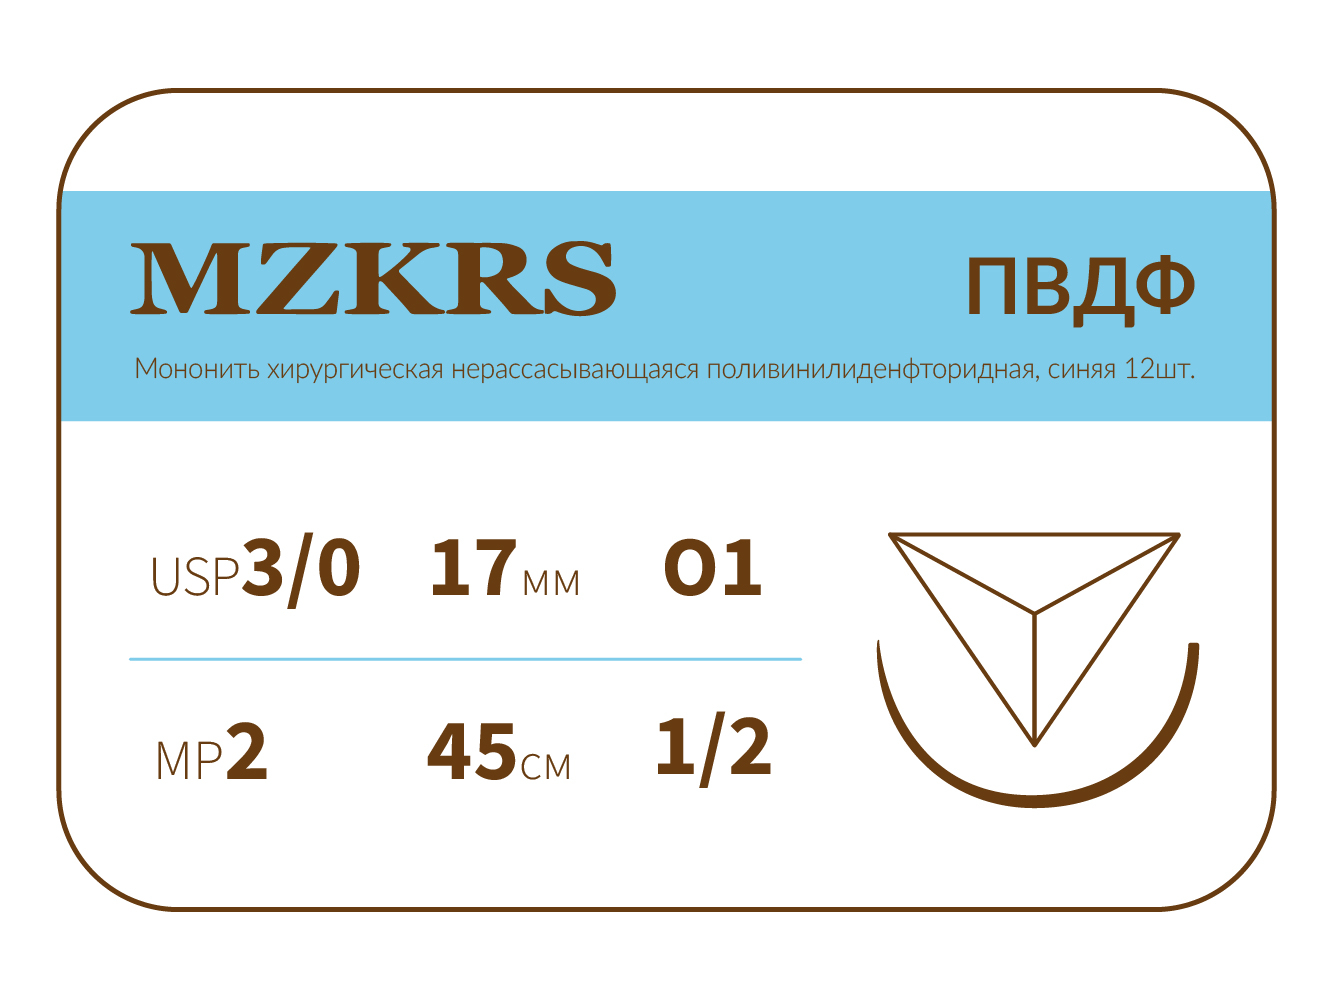 1712О1-Premium-3/0 (2)45 ПВДФ хирургическая нить поливинилиденфторидная, MZKRS (Россия)